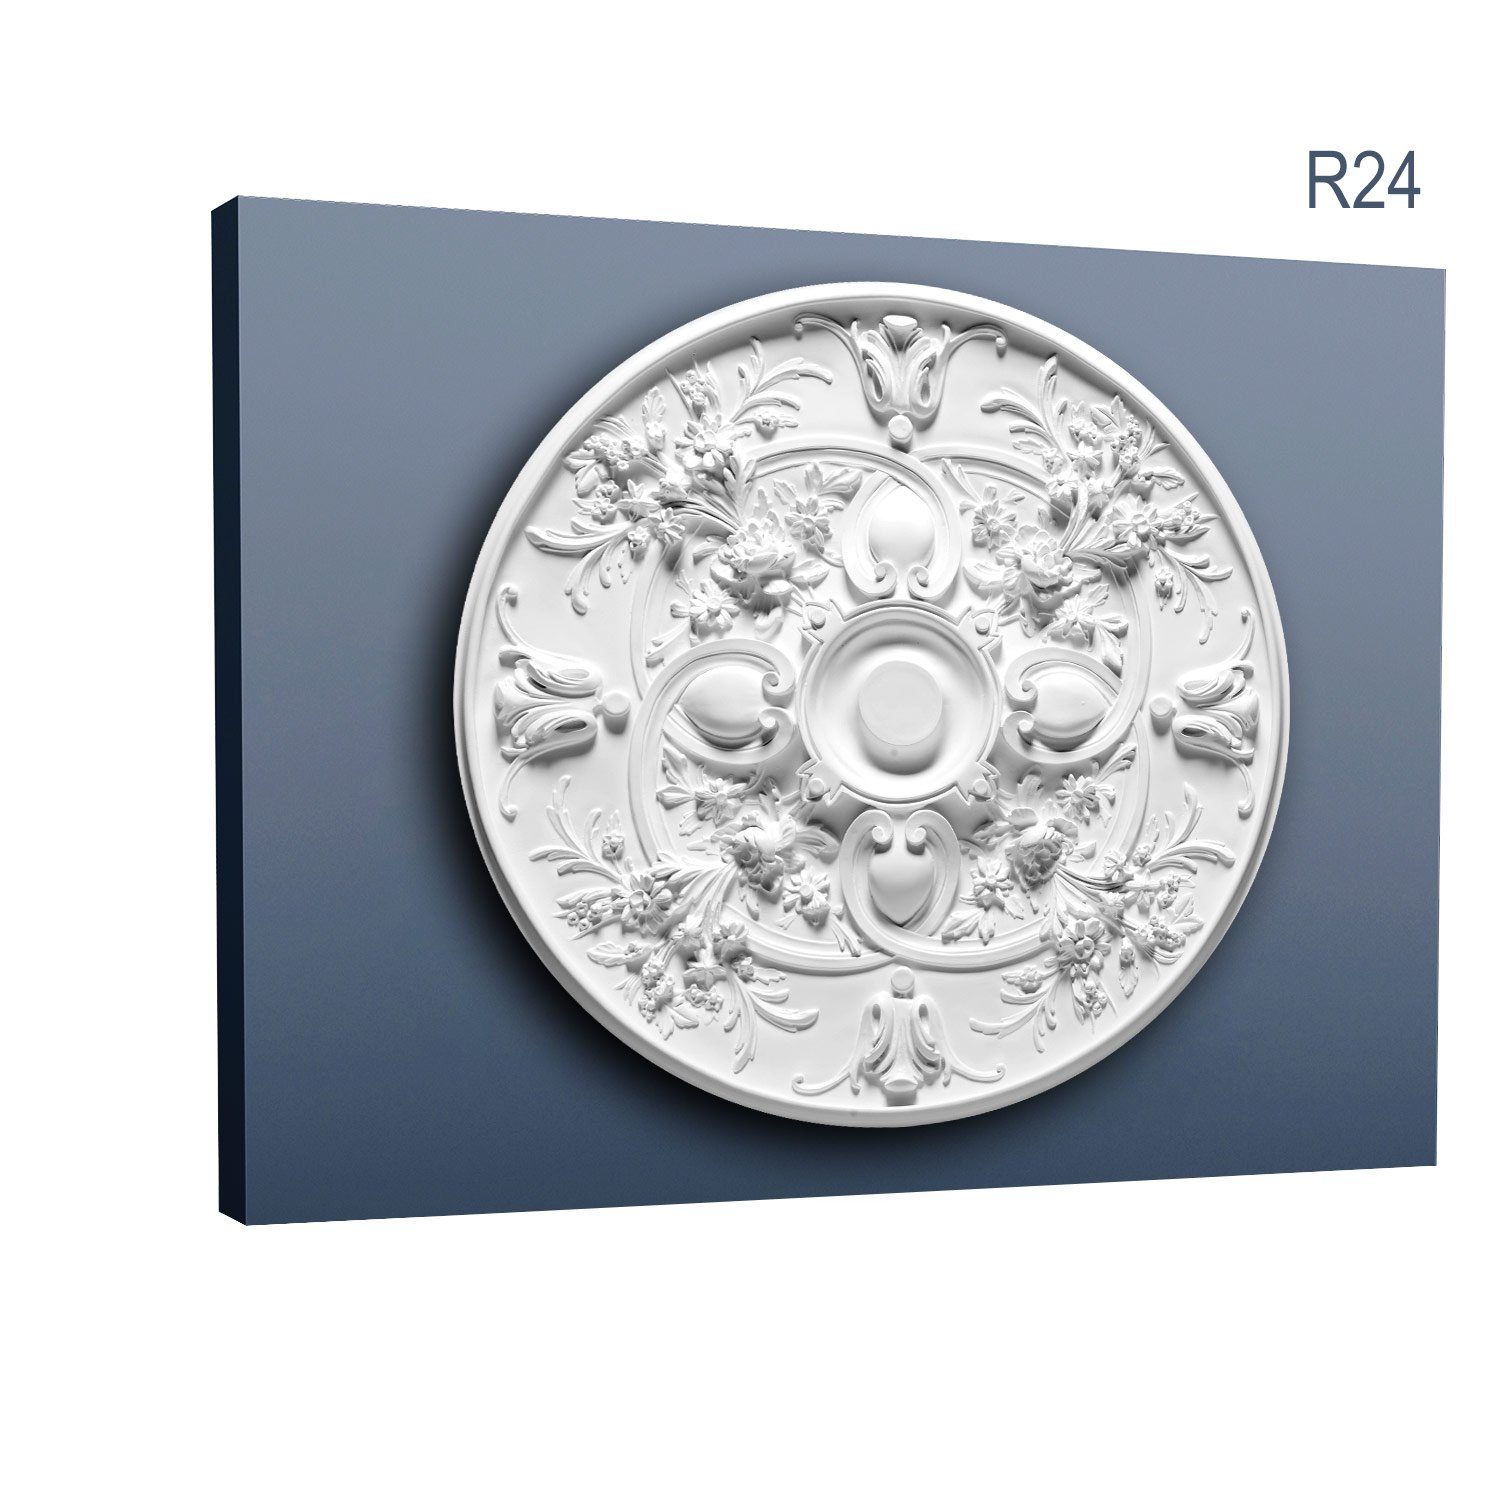 Orac Decor Decken-Rosette R24 (Rosette, 1 St., Deckenrosette, Medallion, Stuckrosette, Deckenelement, Zierelement, Durchmesser 79 cm), weiß, vorgrundiert, Stil: Jugendstil